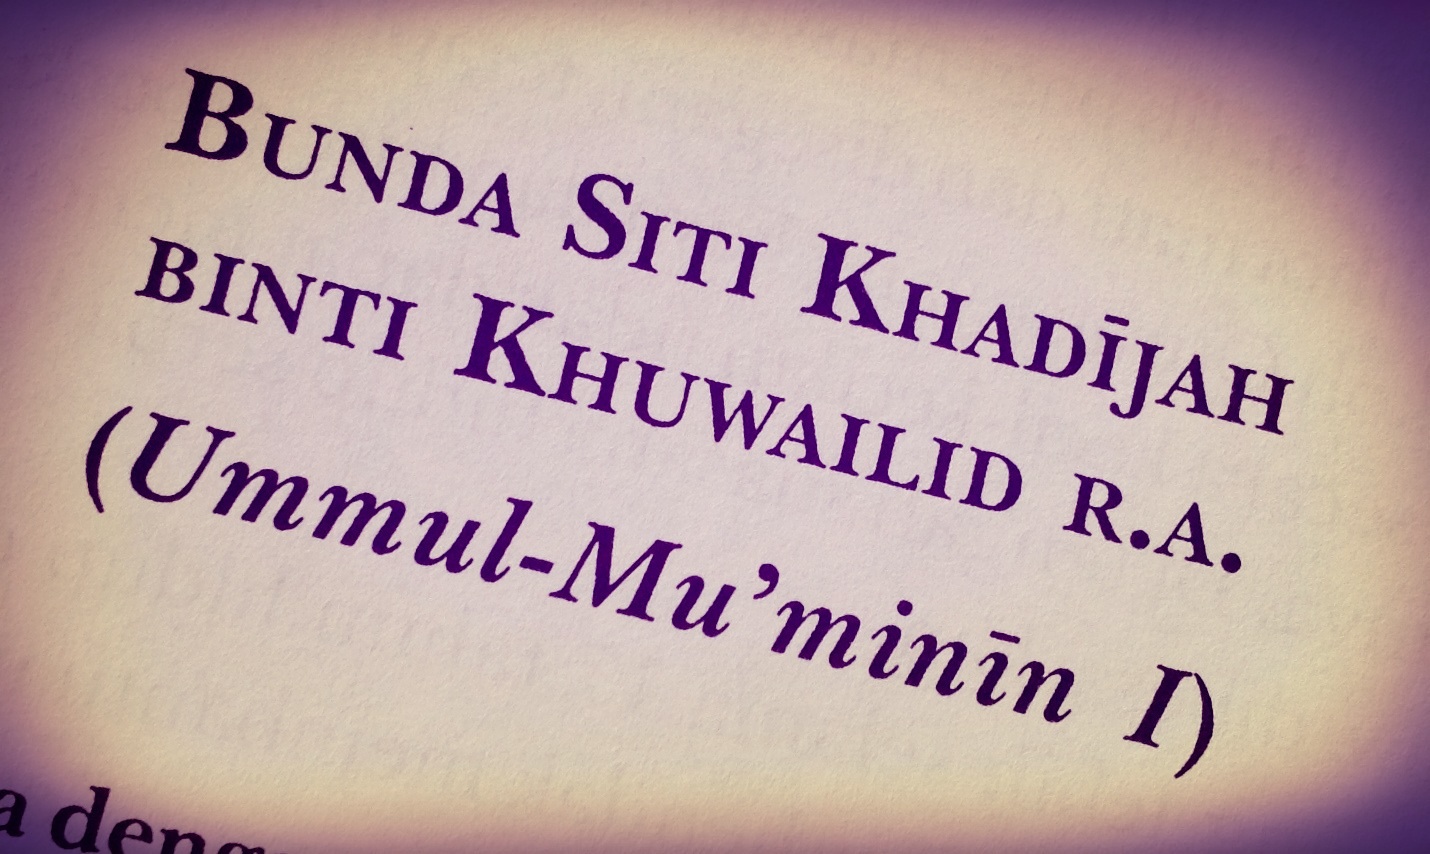 Kisah Khadijah R.A. (Ummul-Mu'minin)  Pengajian Pelajar 